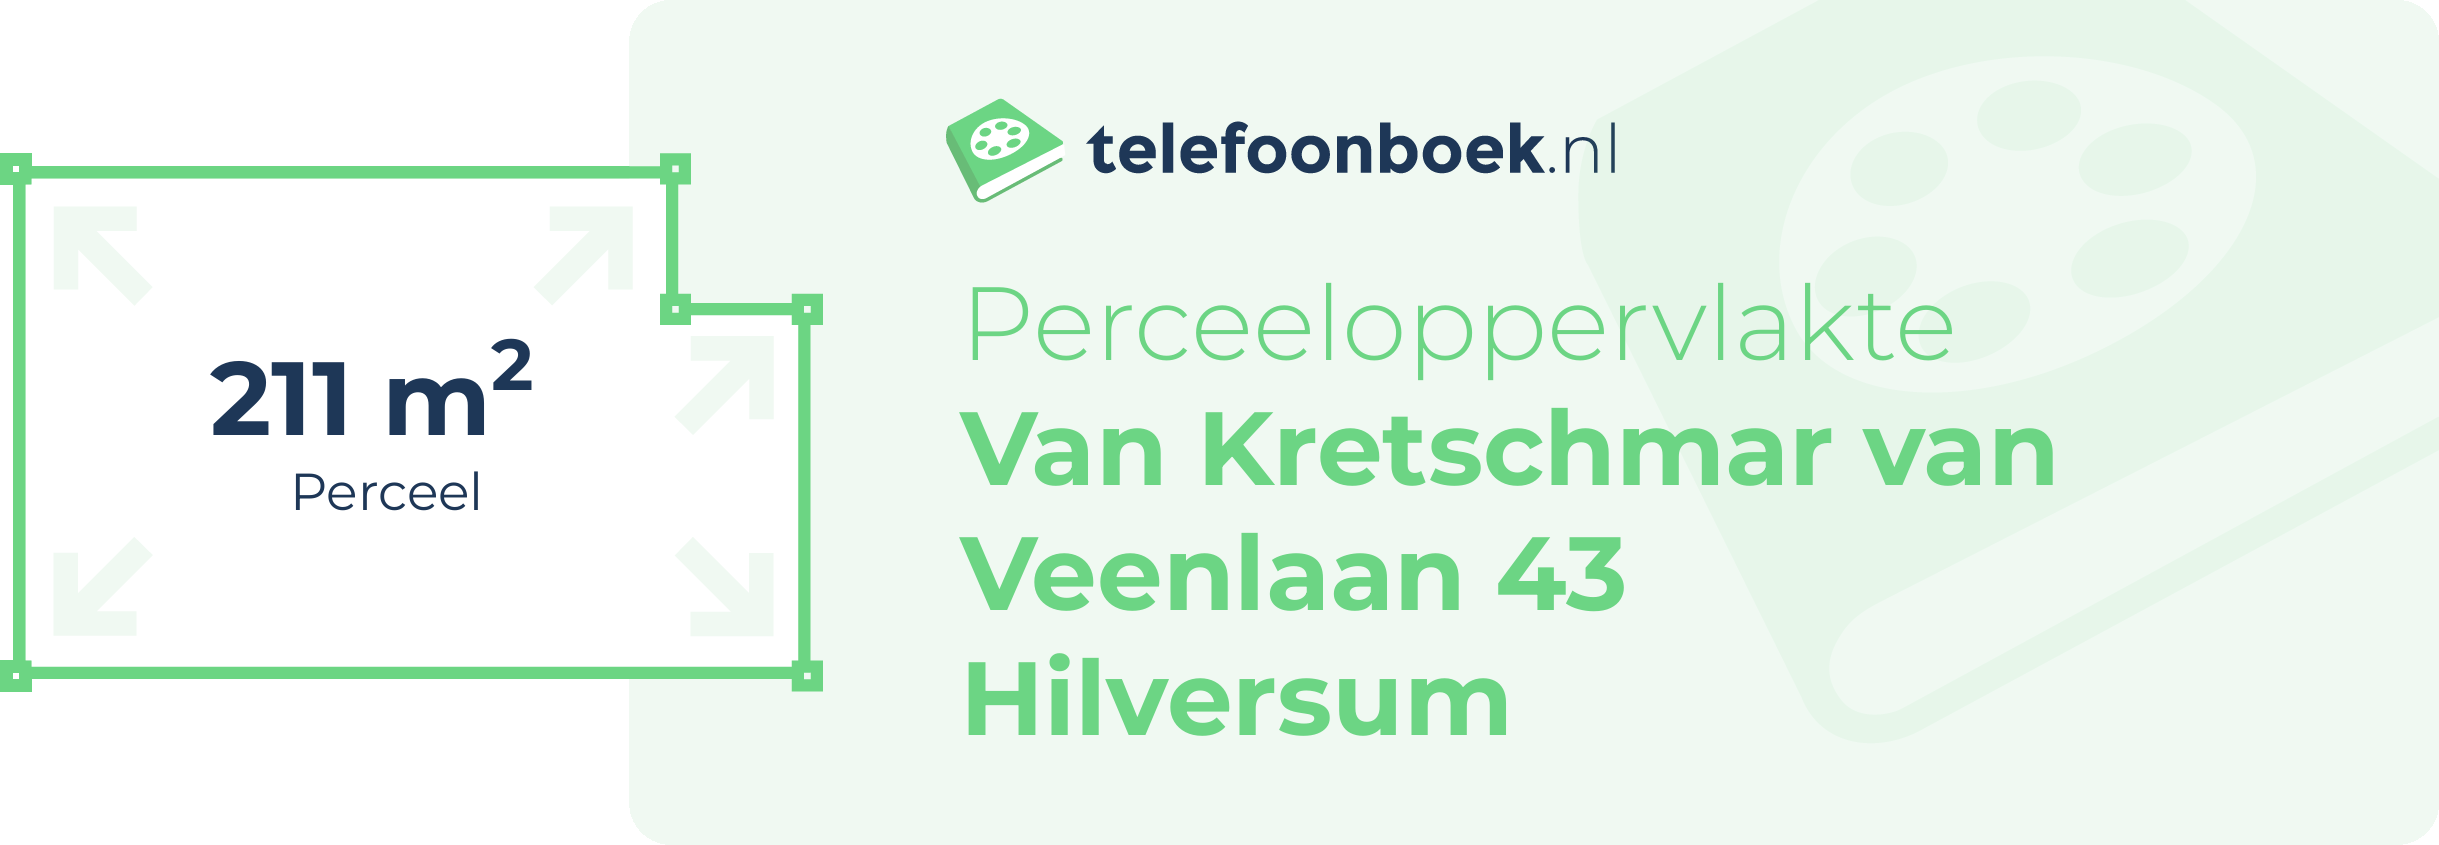 Perceeloppervlakte Van Kretschmar Van Veenlaan 43 Hilversum